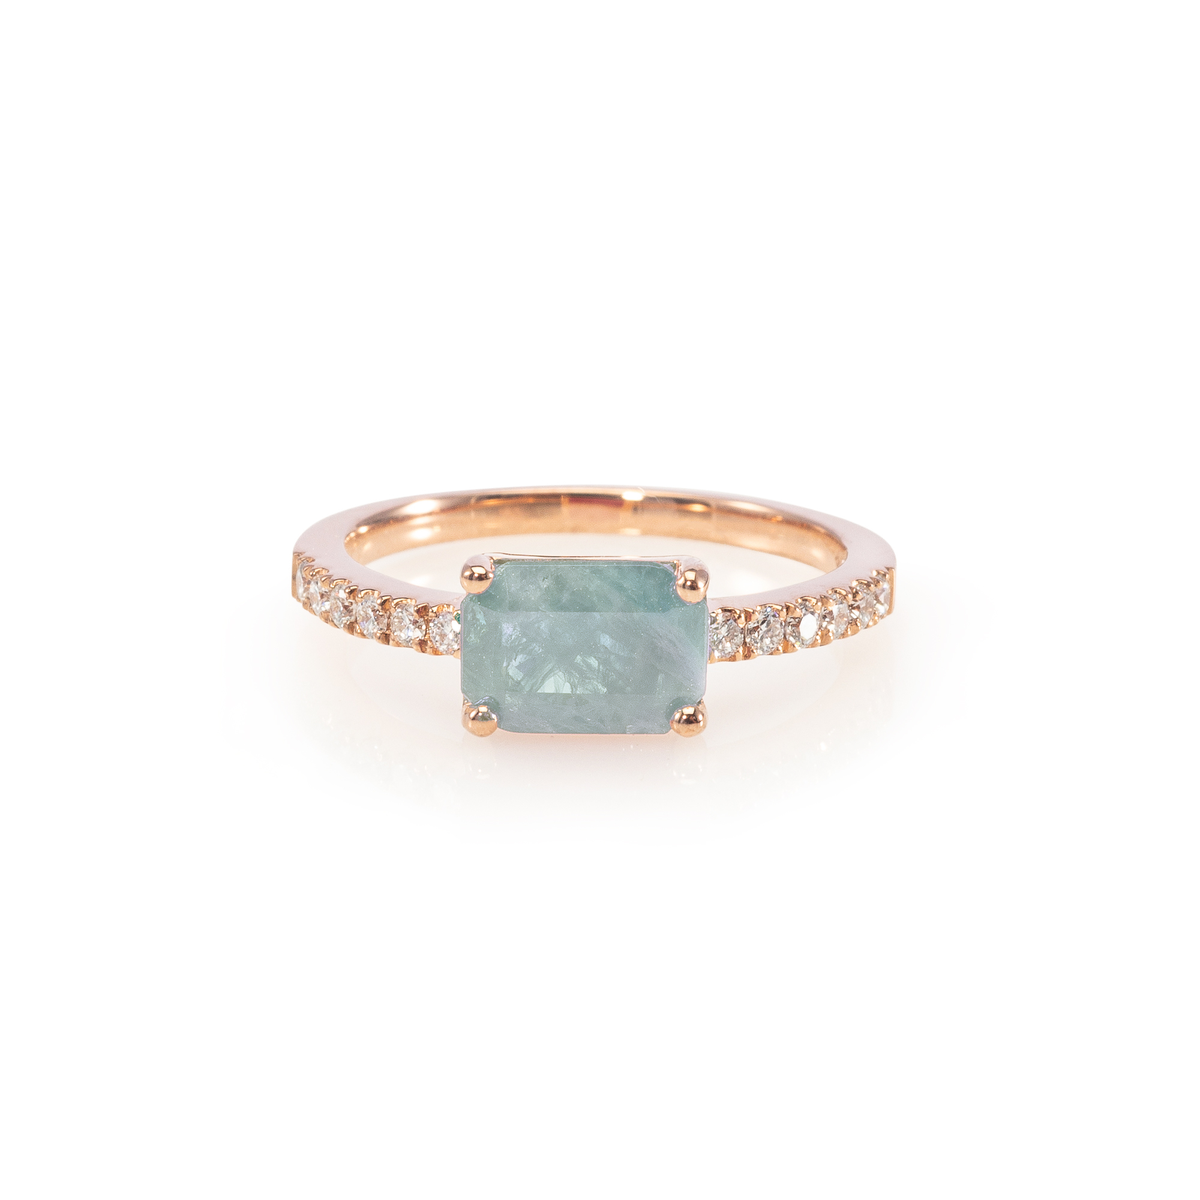 Emerald Cut Ruby Ring